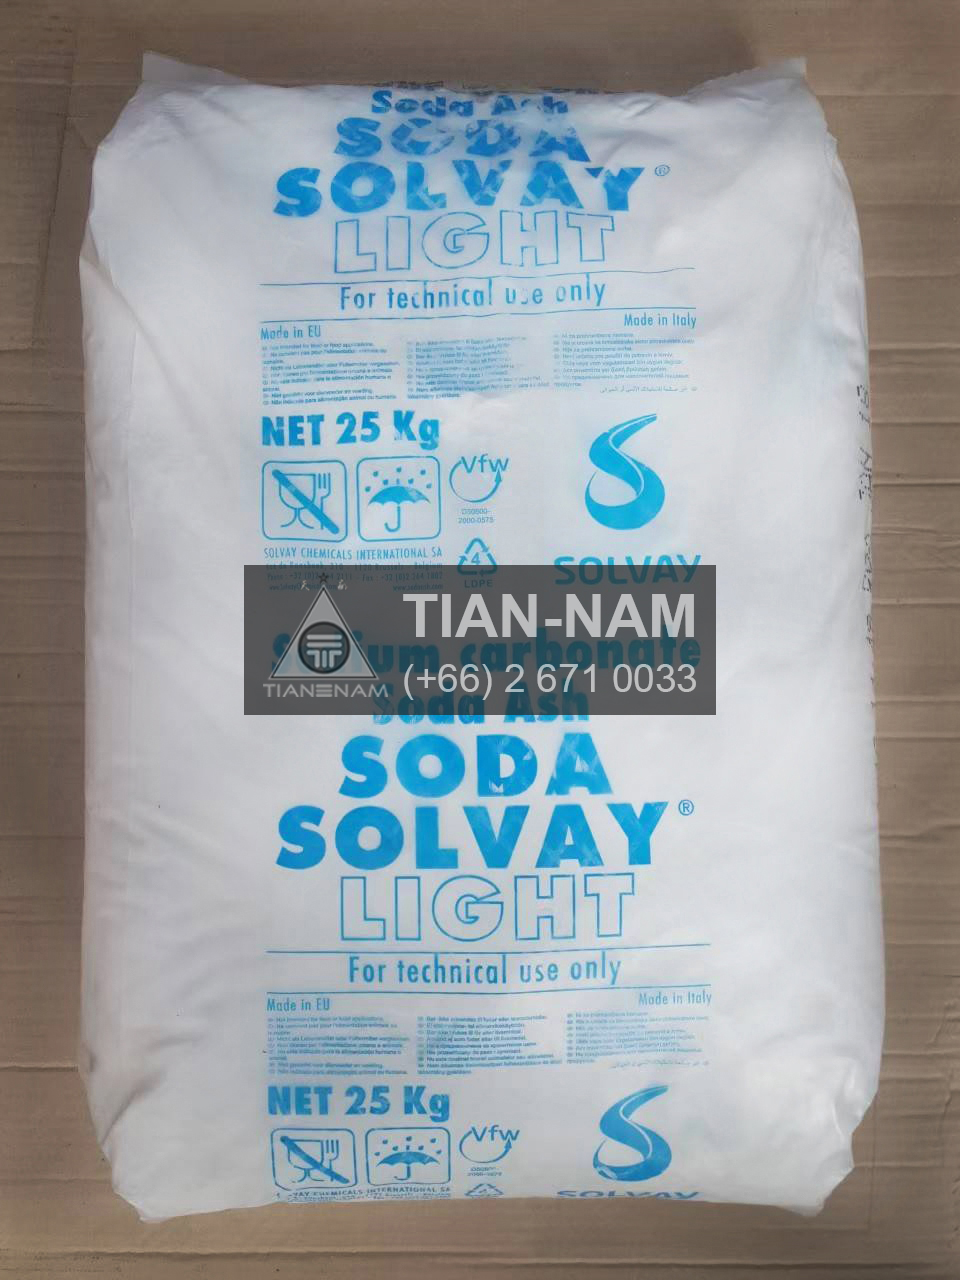 โซเดียม คาร์บอเนต เทคเกรด (Sodium carbonate , Soda Ash Light Tech Grade  Solvay) Solvay SC01 261583